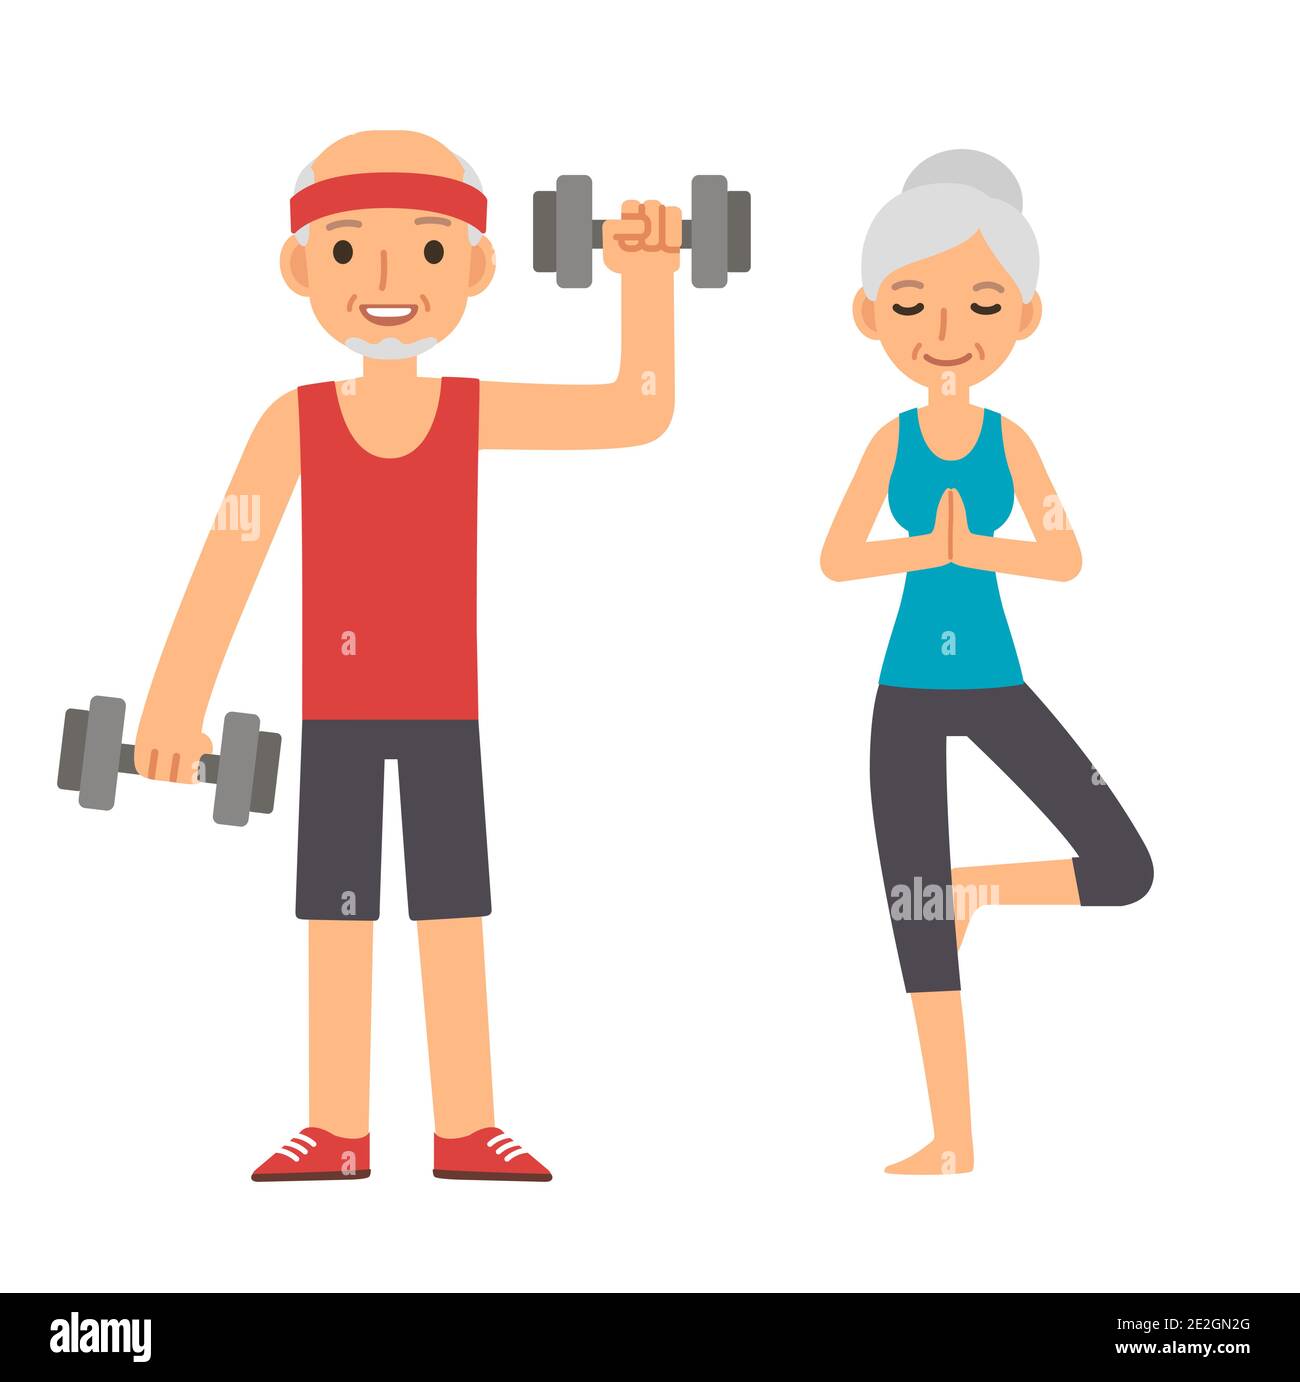 Aktives und gesundes Seniorenpaar: Cartoon-Mann mit Hanteln und Frau, die Yoga macht, isoliert auf weißem Hintergrund. Moderner einfacher flacher Vektor-Stil. Stock Vektor